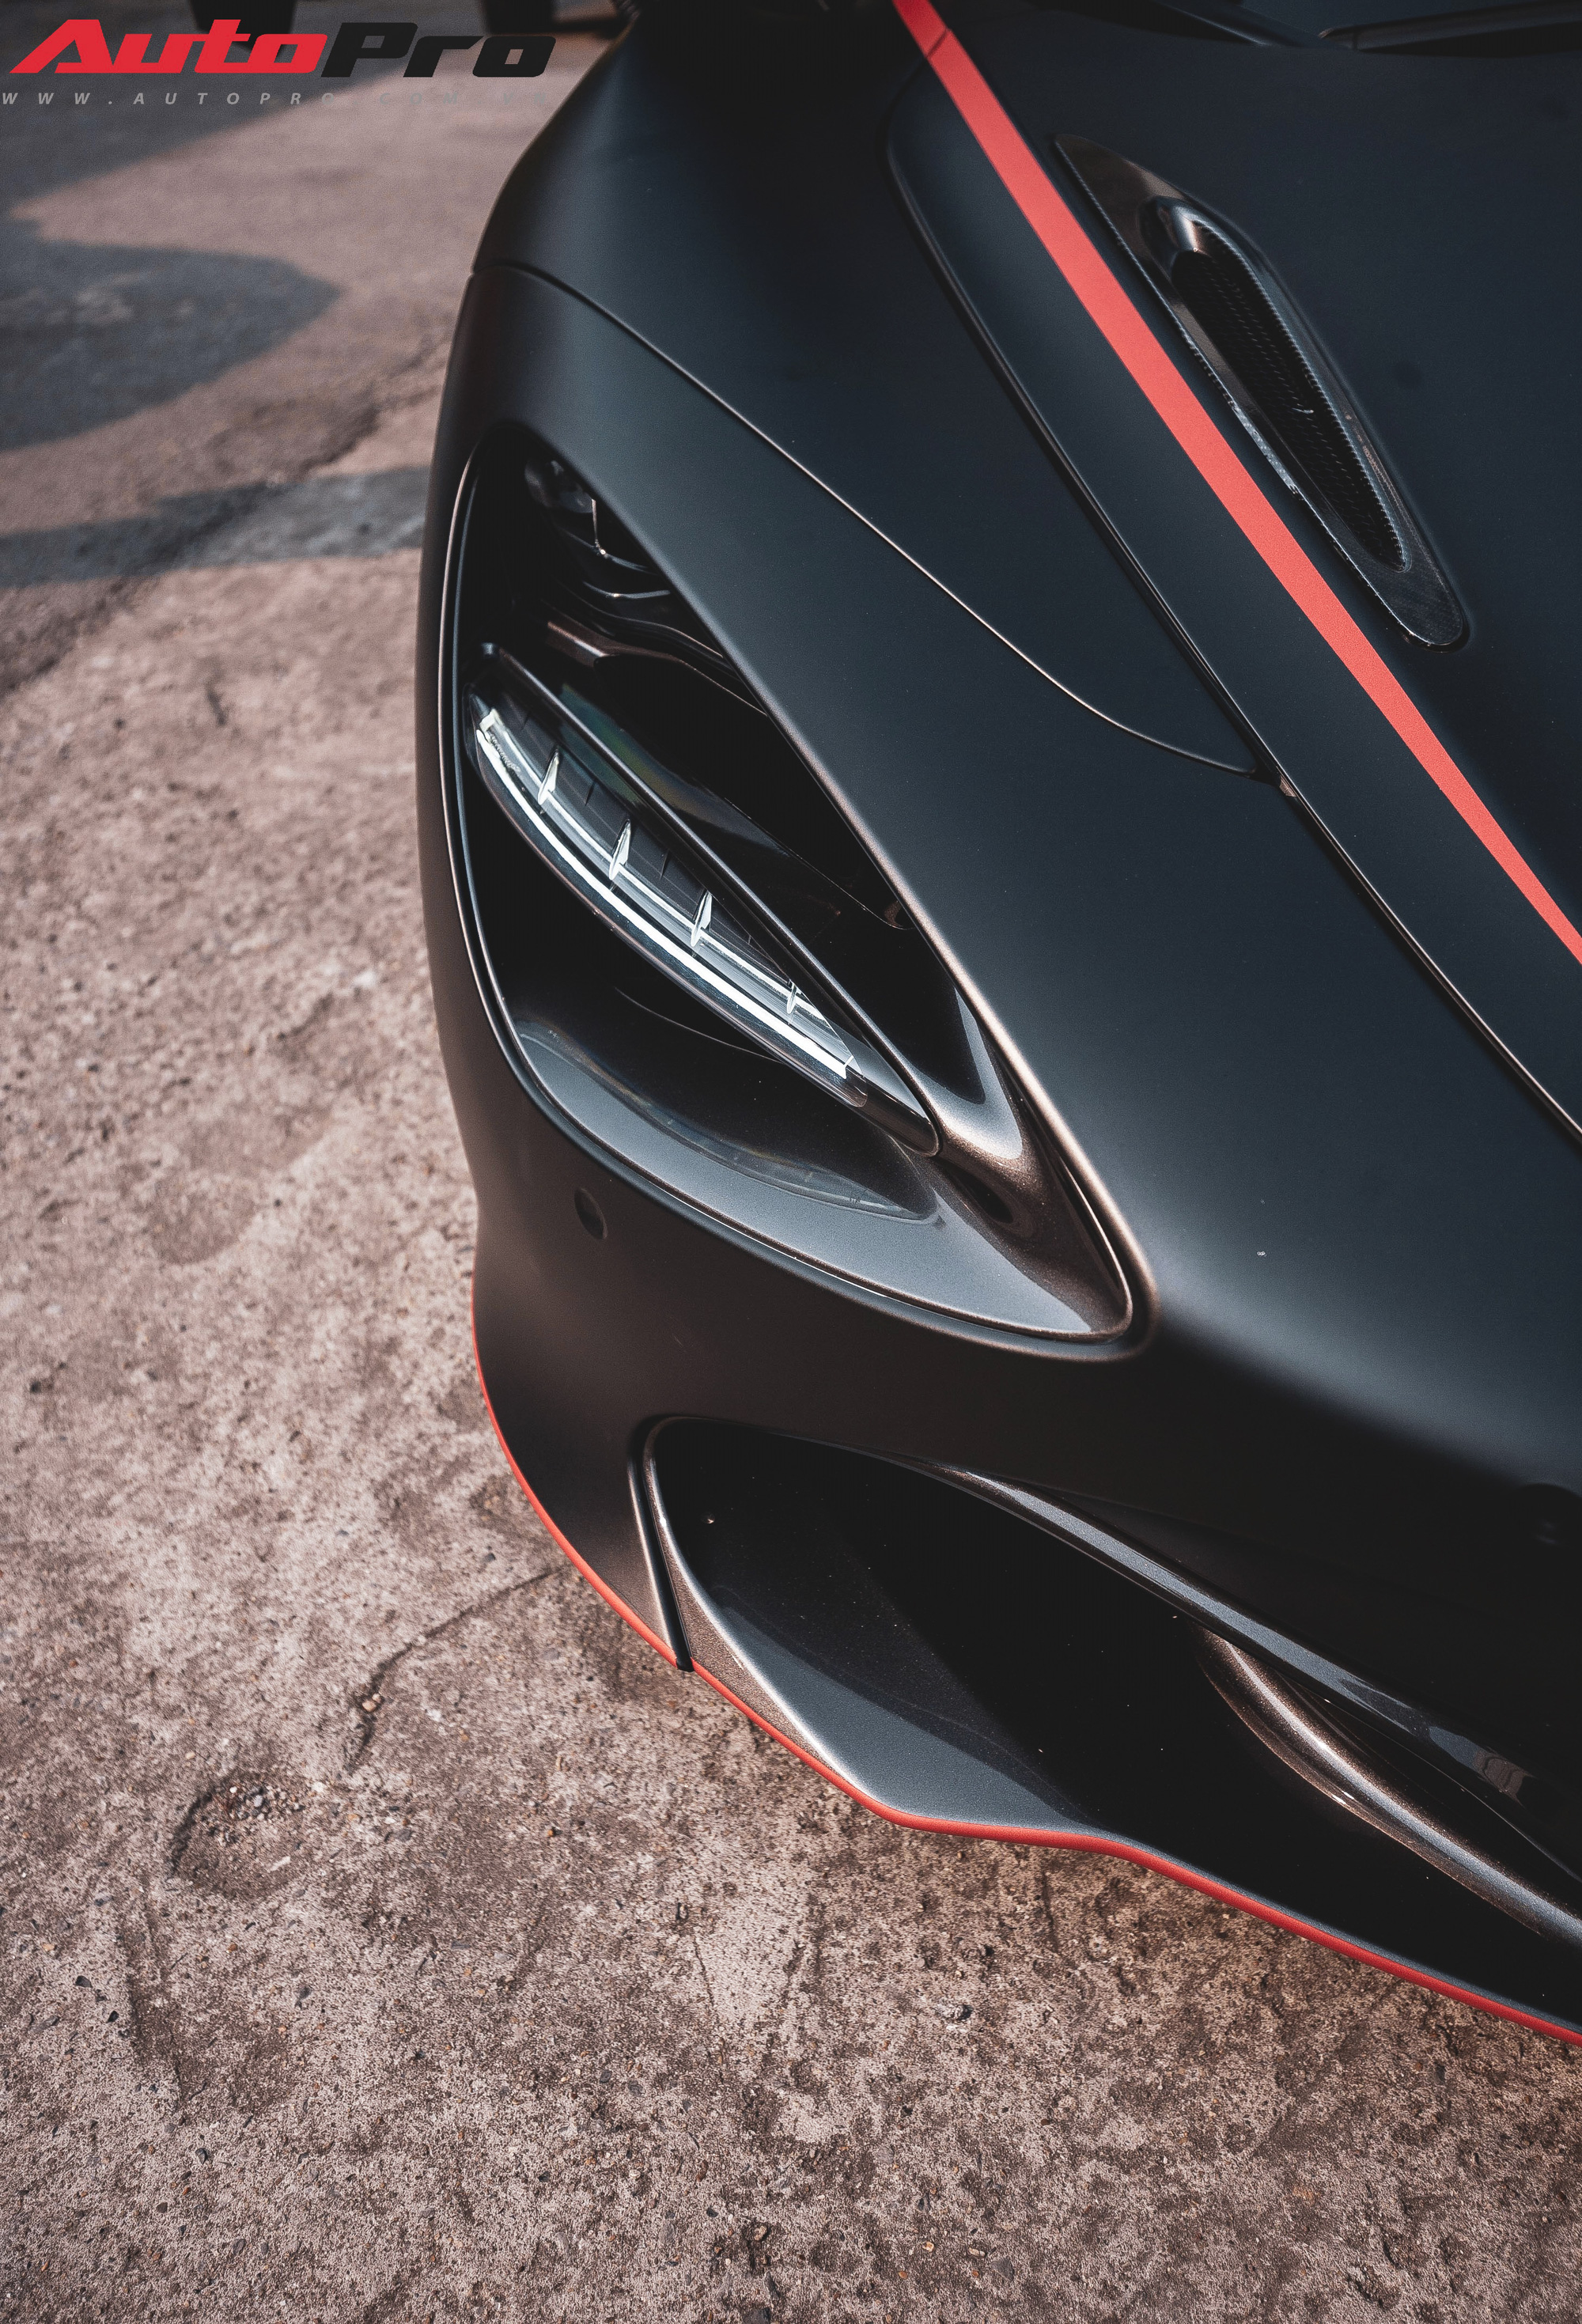 Siêu xe McLaren 720S: Là người yêu xe, bạn muốn sở hữu một siêu xe đẳng cấp, sự đam mê và tốc độ không giới hạn? Hãy đến với McLaren 720S, mẫu siêu xe nổi bật với trang bị công nghệ tiên tiến, phong cách thiết kế độc đáo, tốc độ và sức mạnh tuyệt vời. Tận hưởng những hình ảnh đẹp của chiếc siêu xe này để thấy sự mãn nhãn.